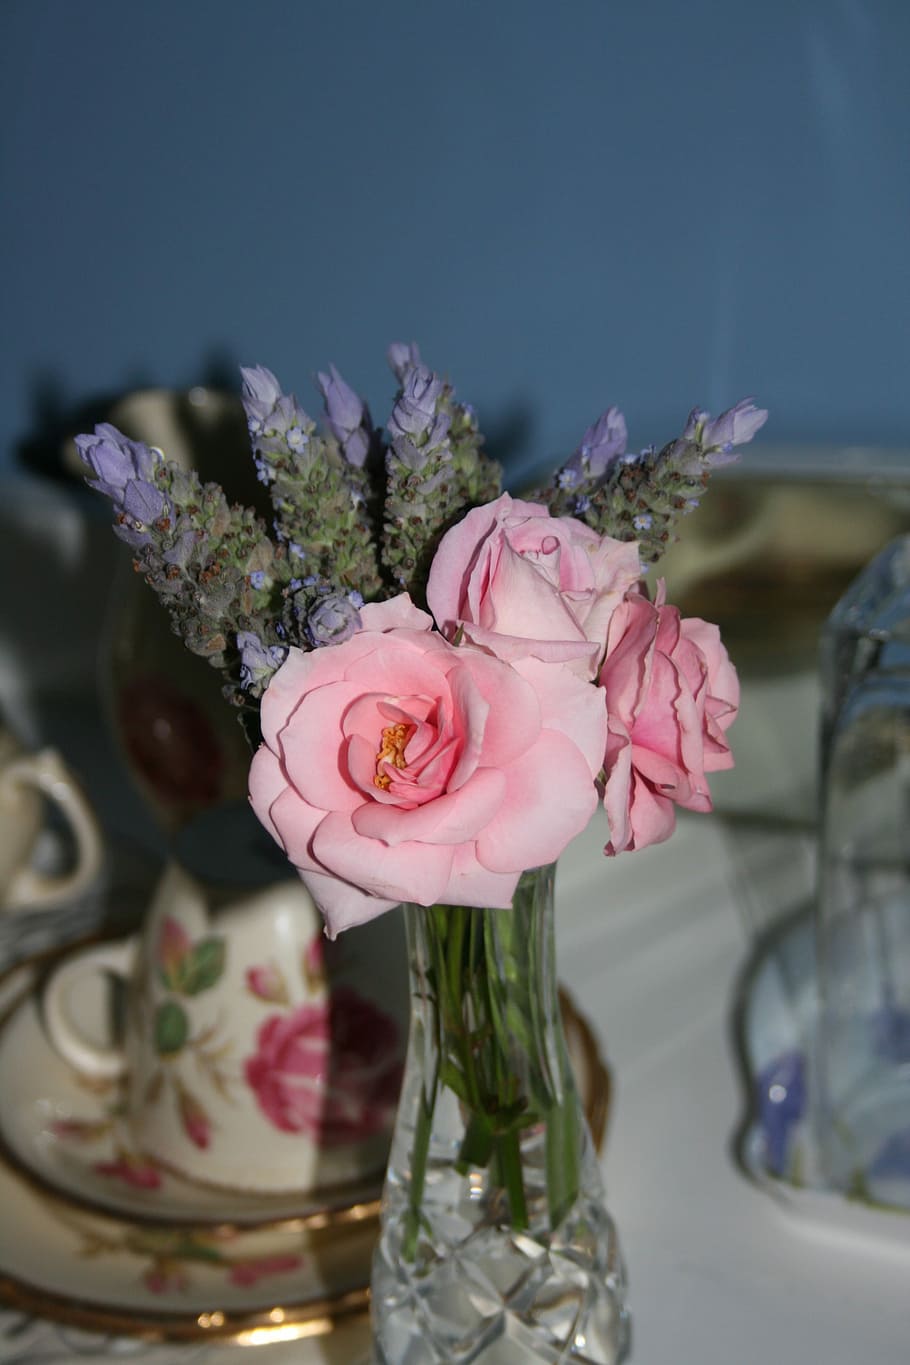 Still Life, Roses, Table, Flower, Love, Shabby Chic, - Love Flower In Table - HD Wallpaper 